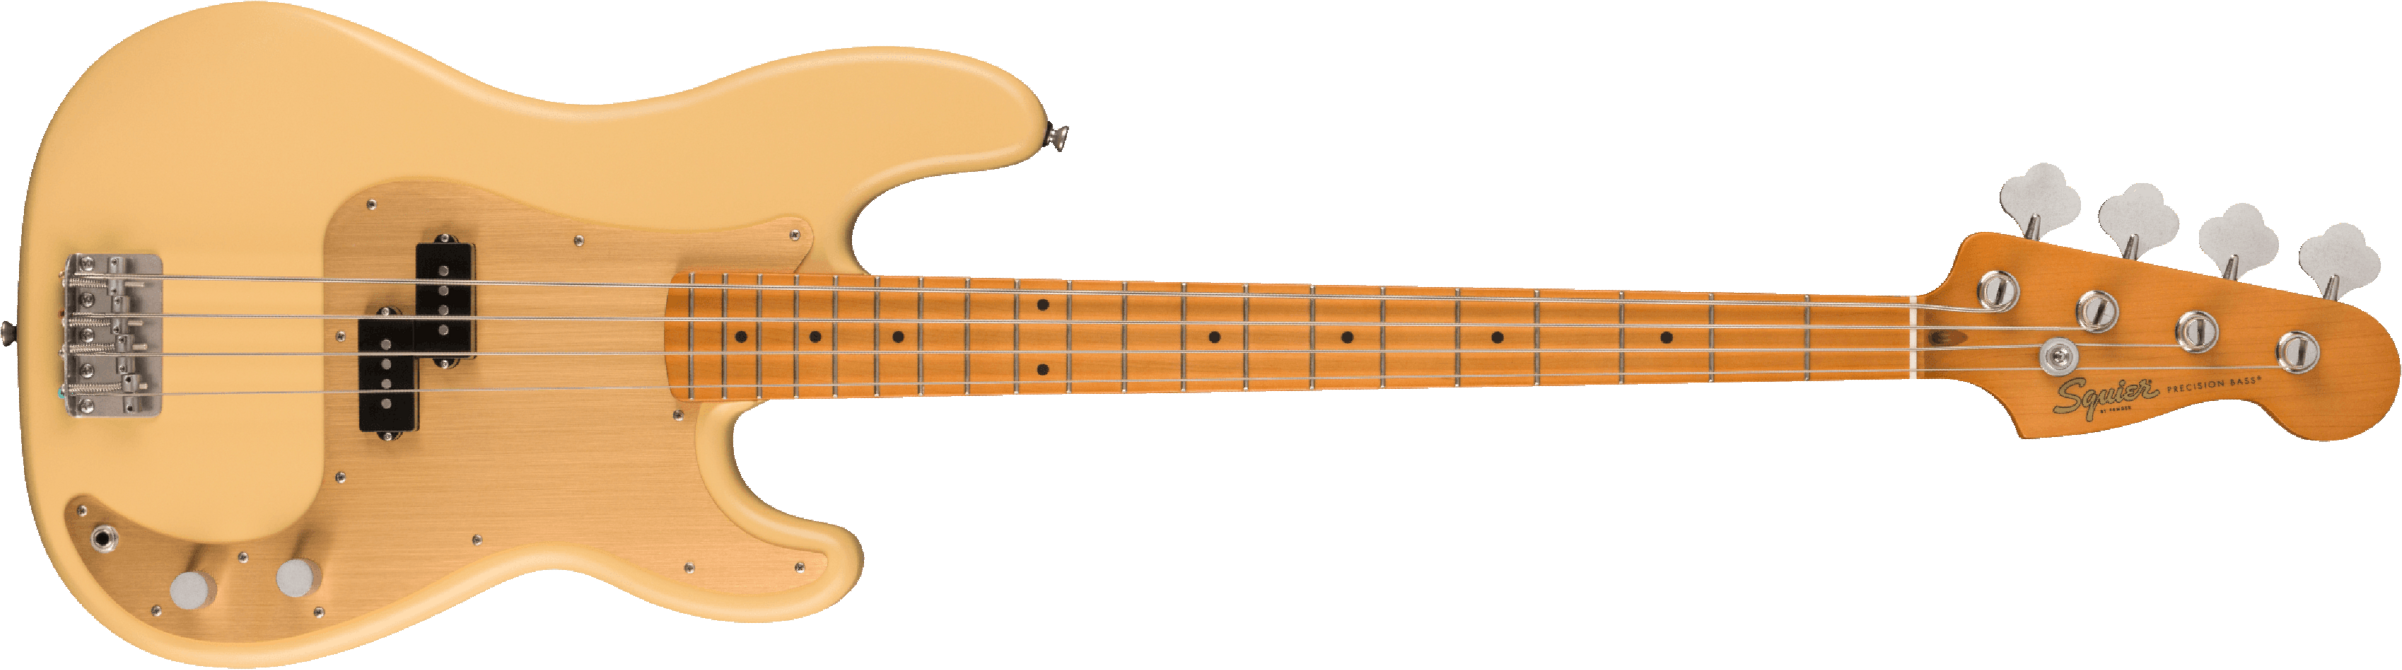 Squier Precision Bass 40th Anniversary Gold Edition Mn - Satin Vintage Blonde - Bajo eléctrico de cuerpo sólido - Main picture